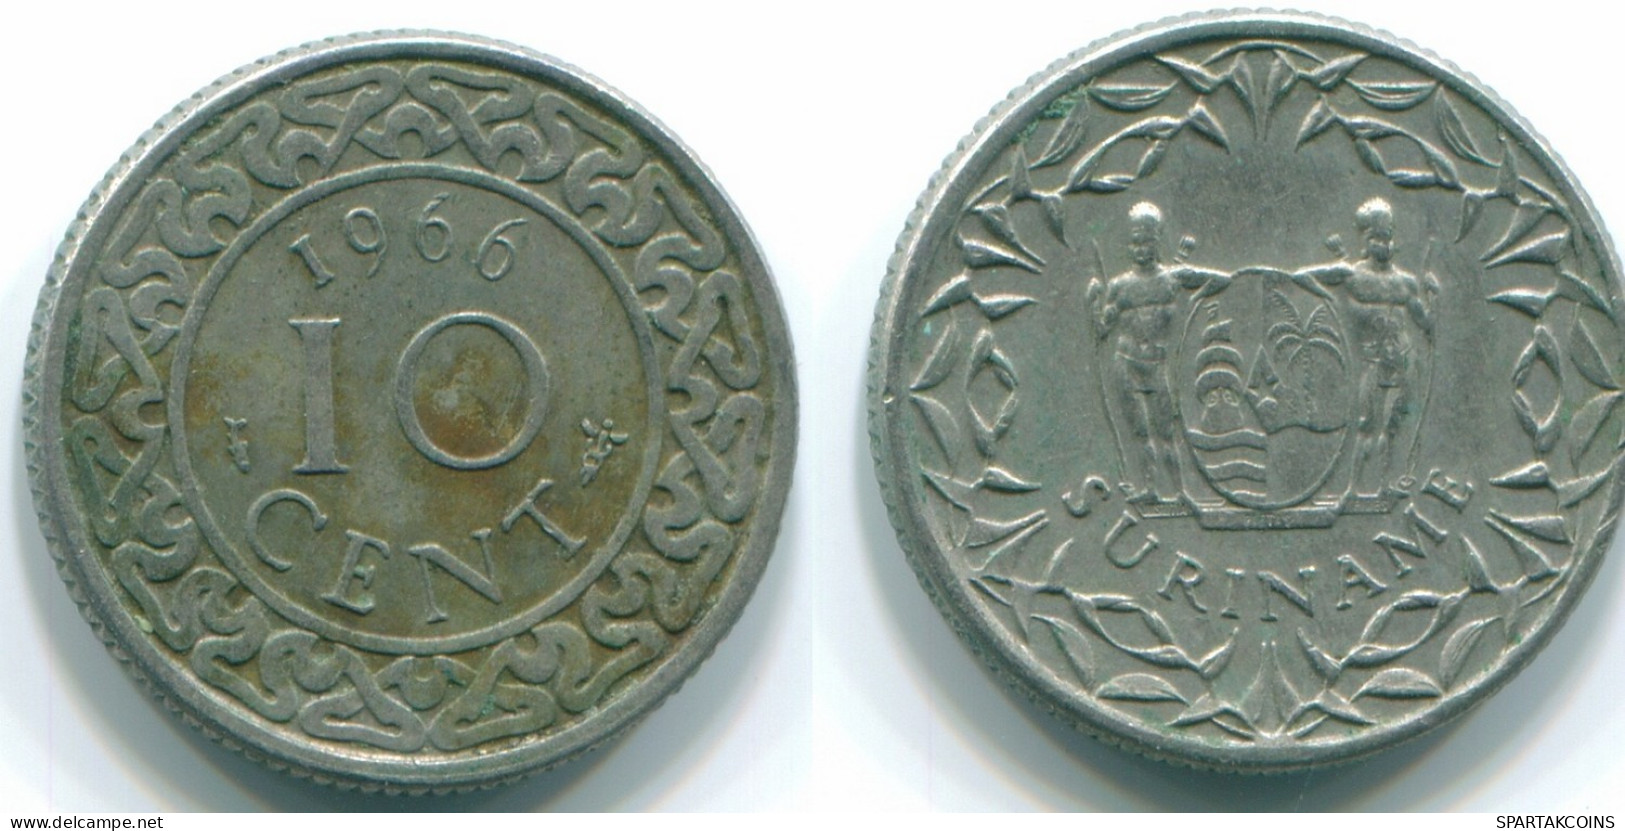 10 CENTS 1966 SURINAM NIEDERLANDE Nickel Koloniale Münze #S13228.D.A - Surinam 1975 - ...